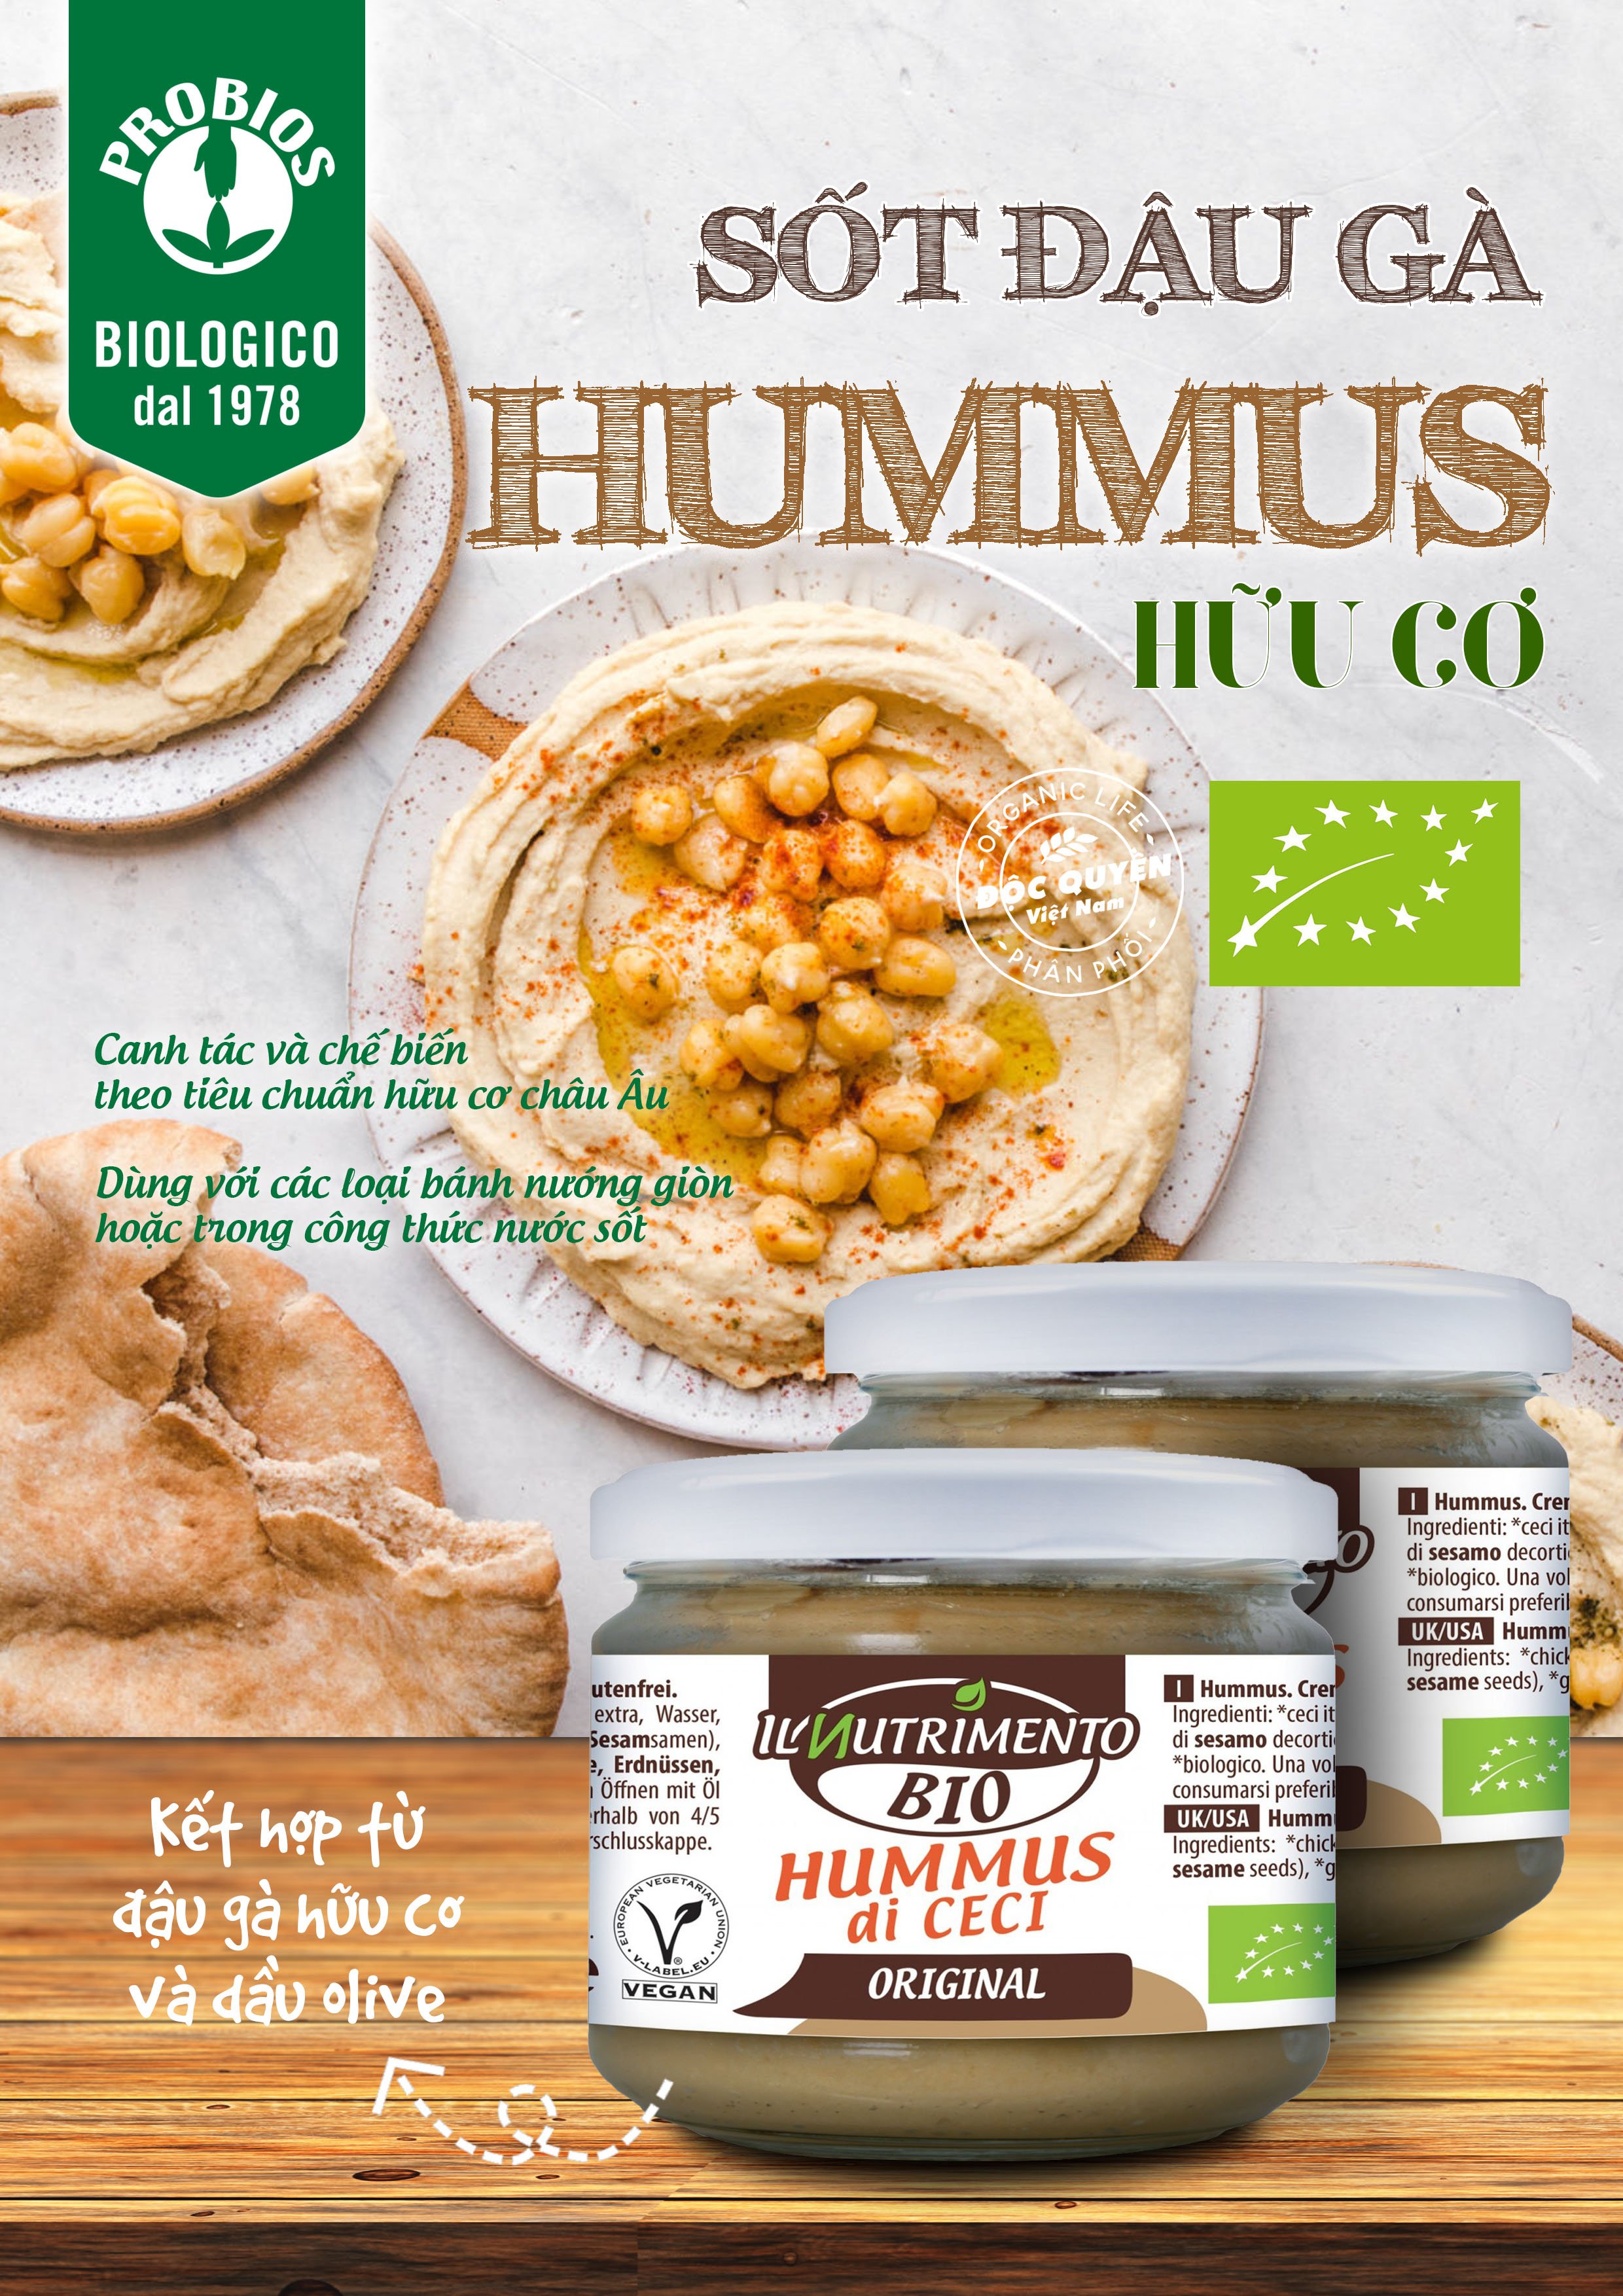 Sốt Đậu Gà Hummus hữu cơ 180g ProBios